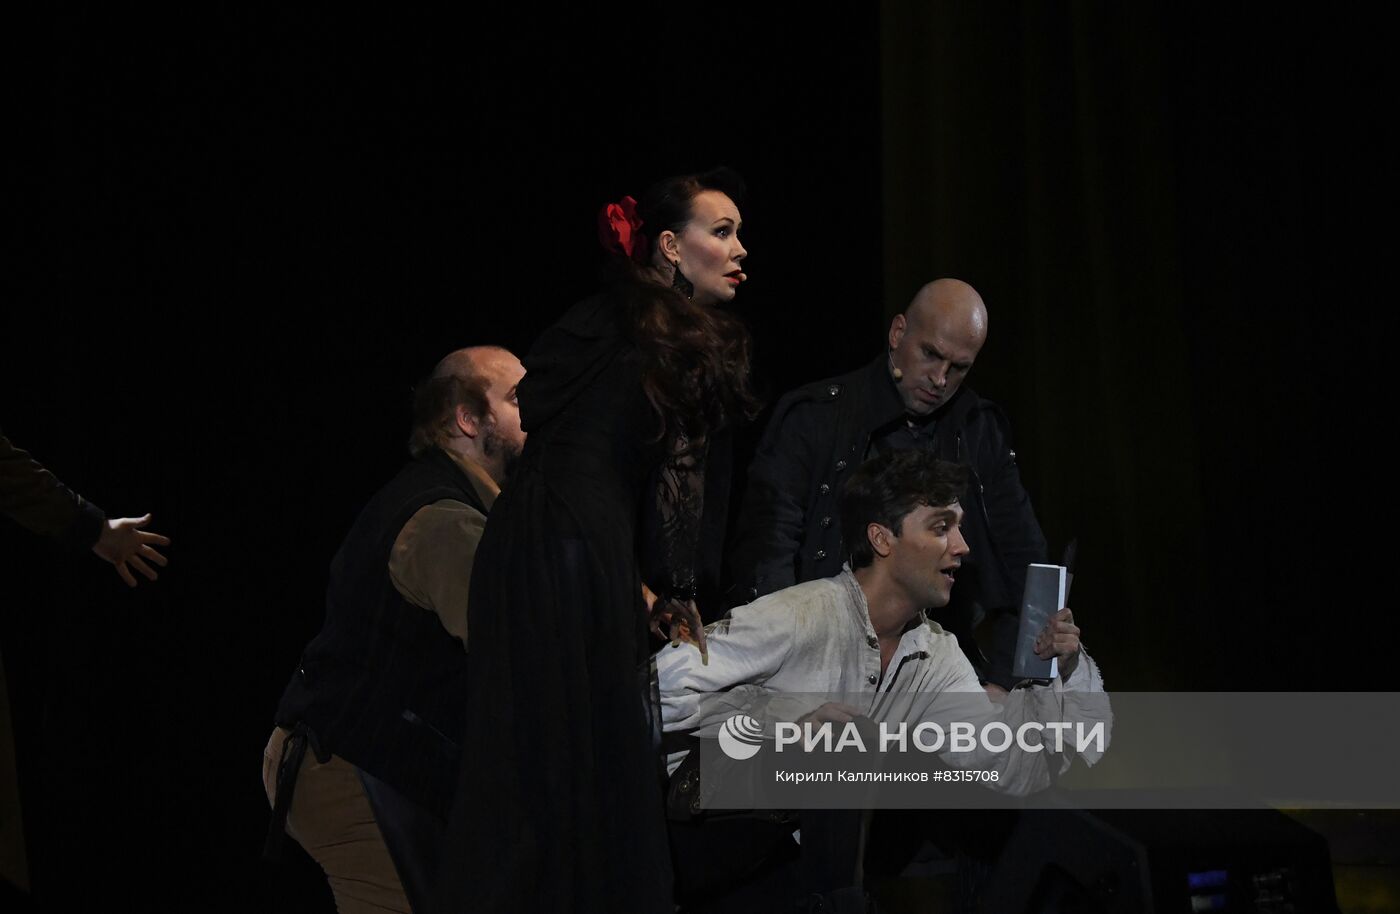 Показ мюзикла "Дон Жуан" с Н. Гришаевой и И. Ожогиным